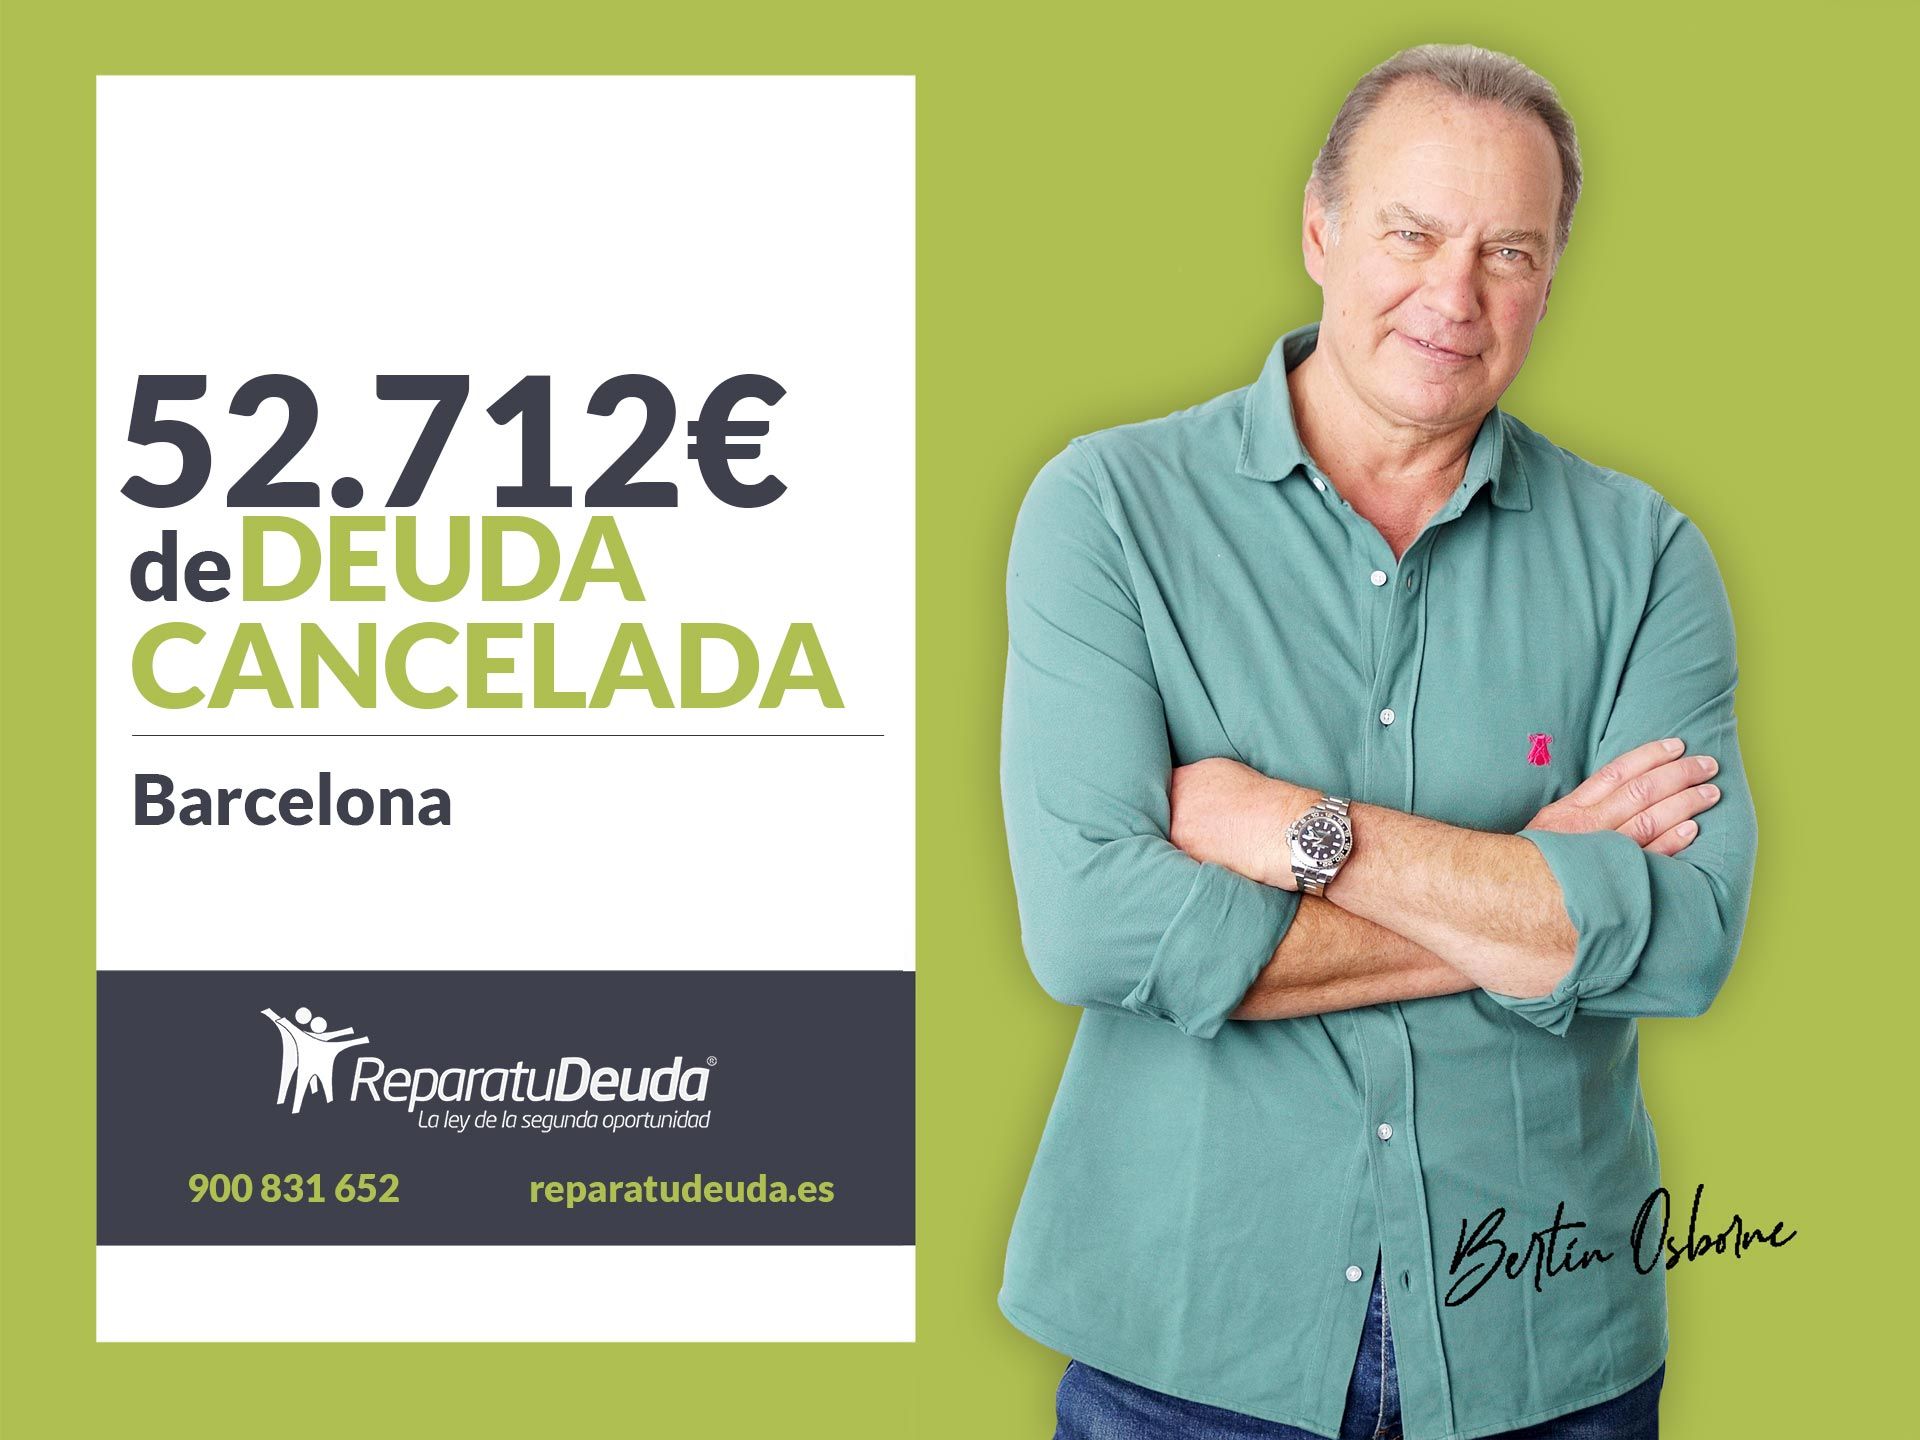 Repara tu Deuda Abogados cancela 52.712? en Barcelona (Catalunya) con la Ley de Segunda Oportunidad